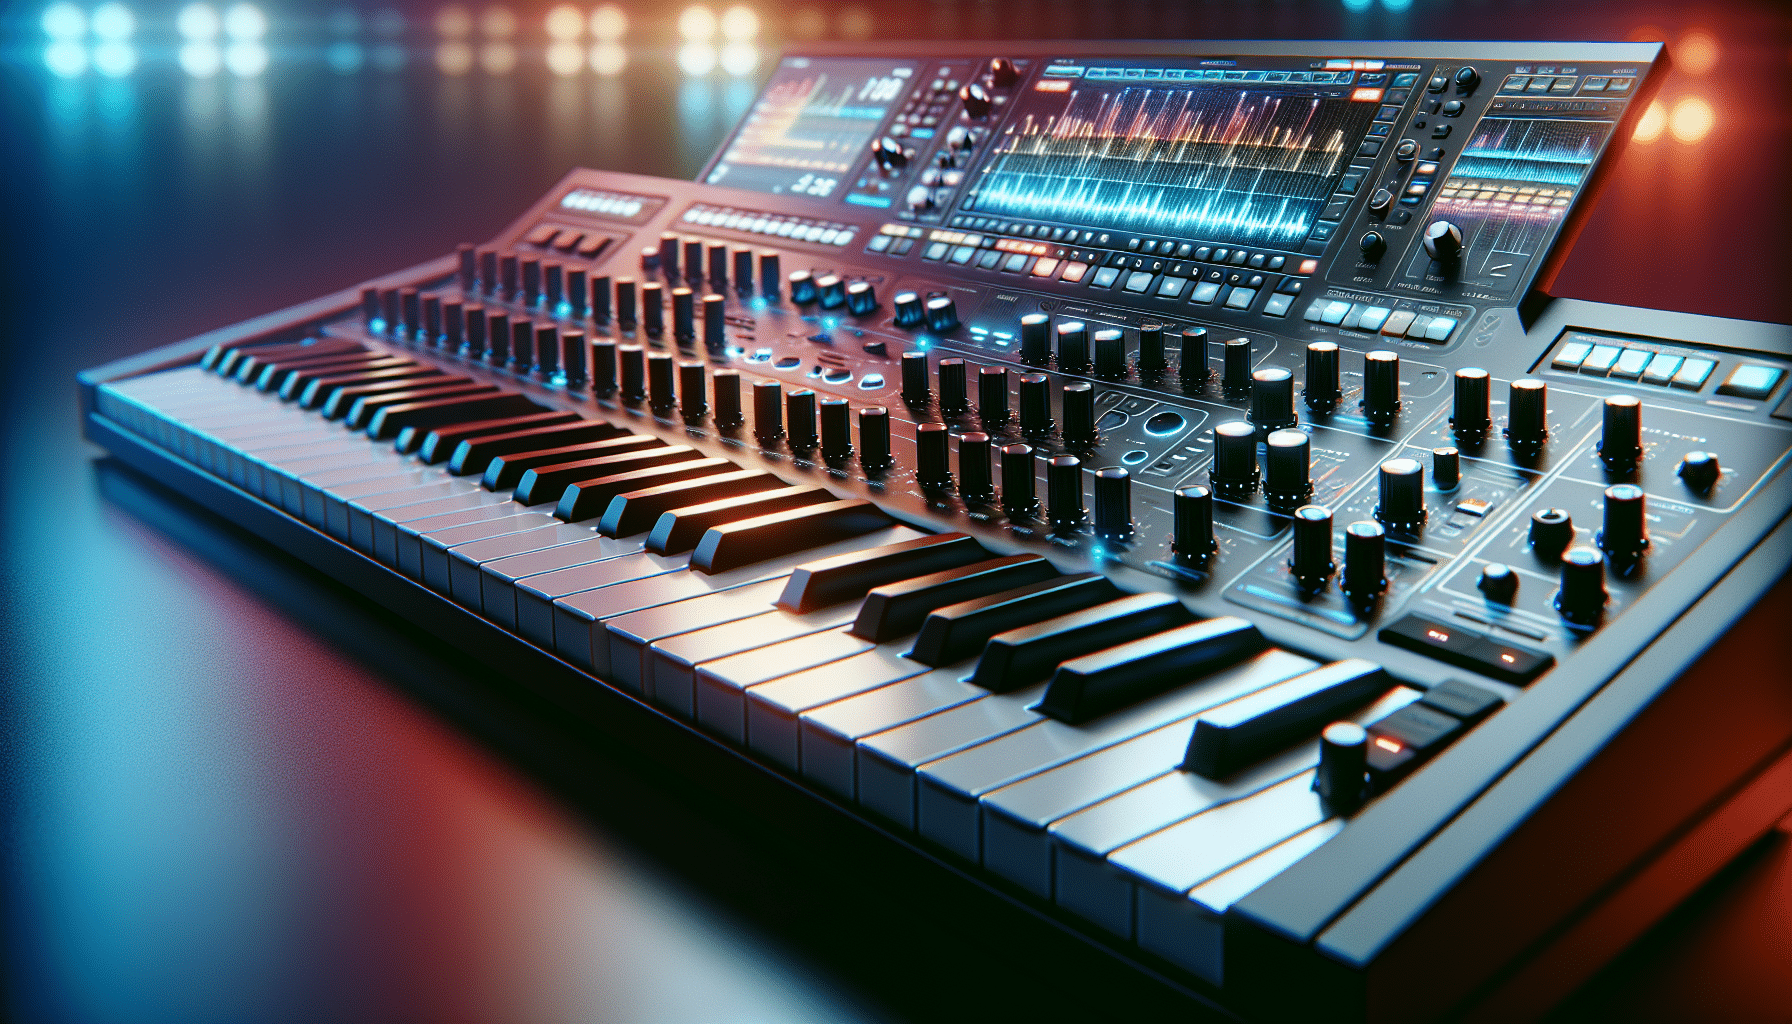 Et billede af produktet Elektronisk Keyboard. Billedet bruges som featured image til artiklen Bedste Elektronisk Keyboard i Test